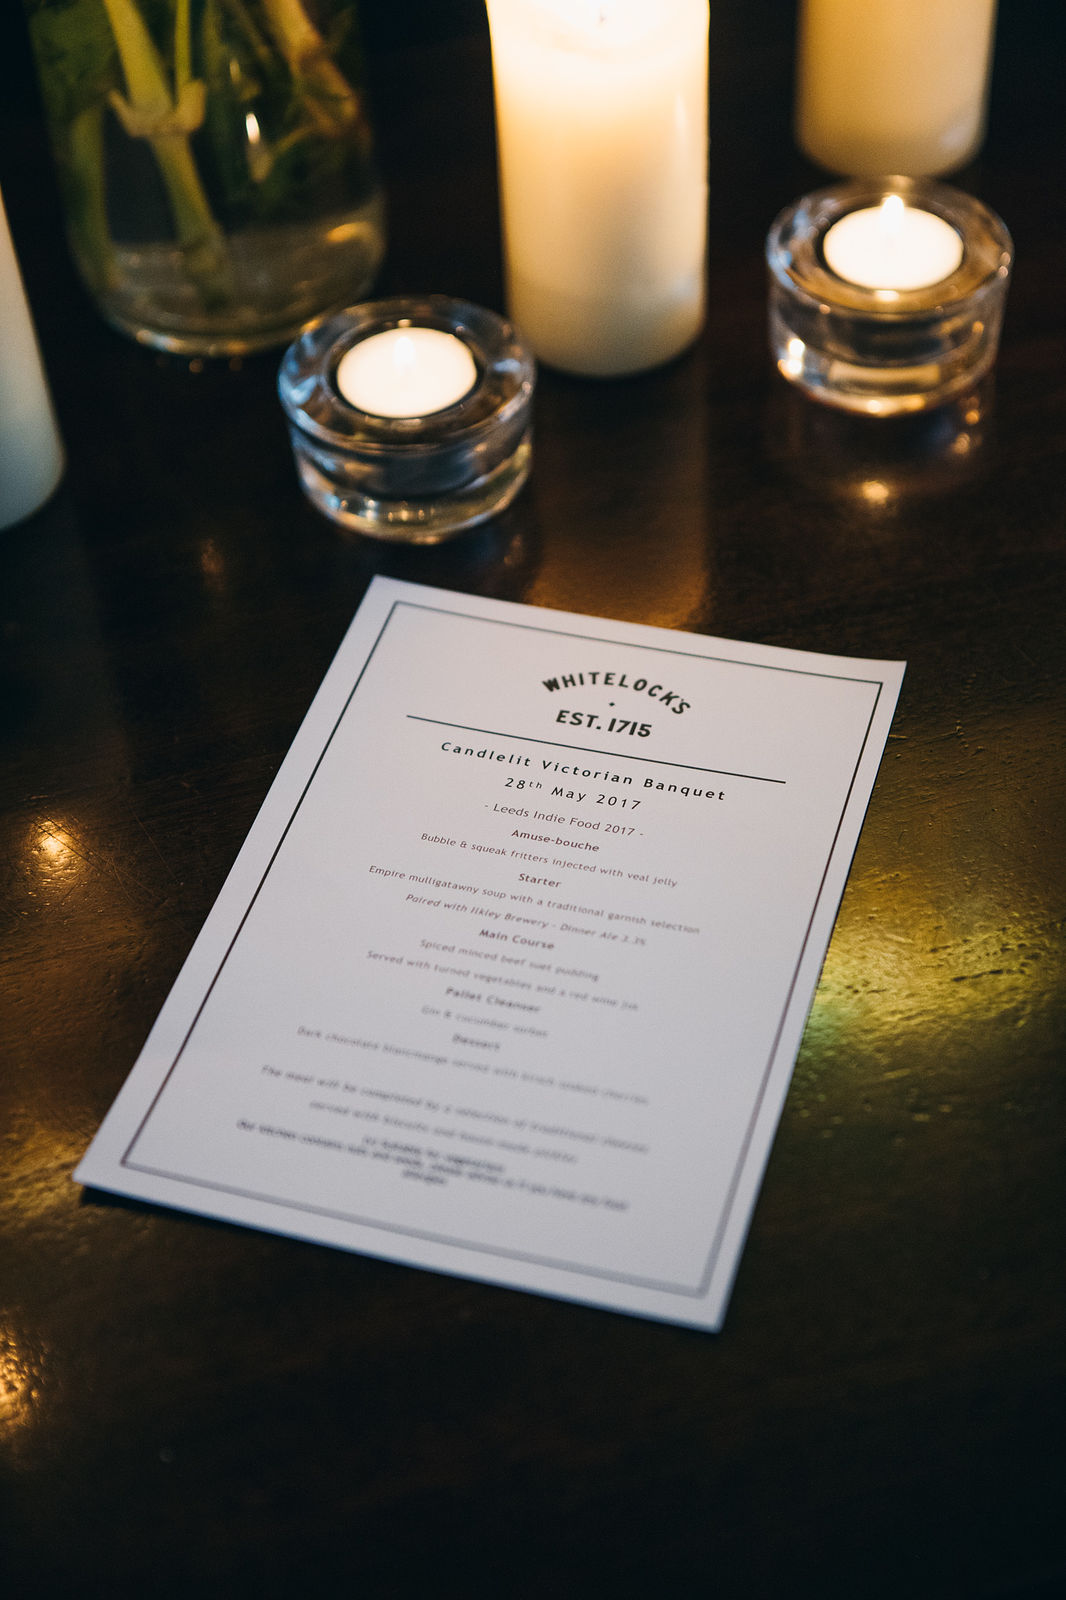 Whitelock’s Victorian Banquet